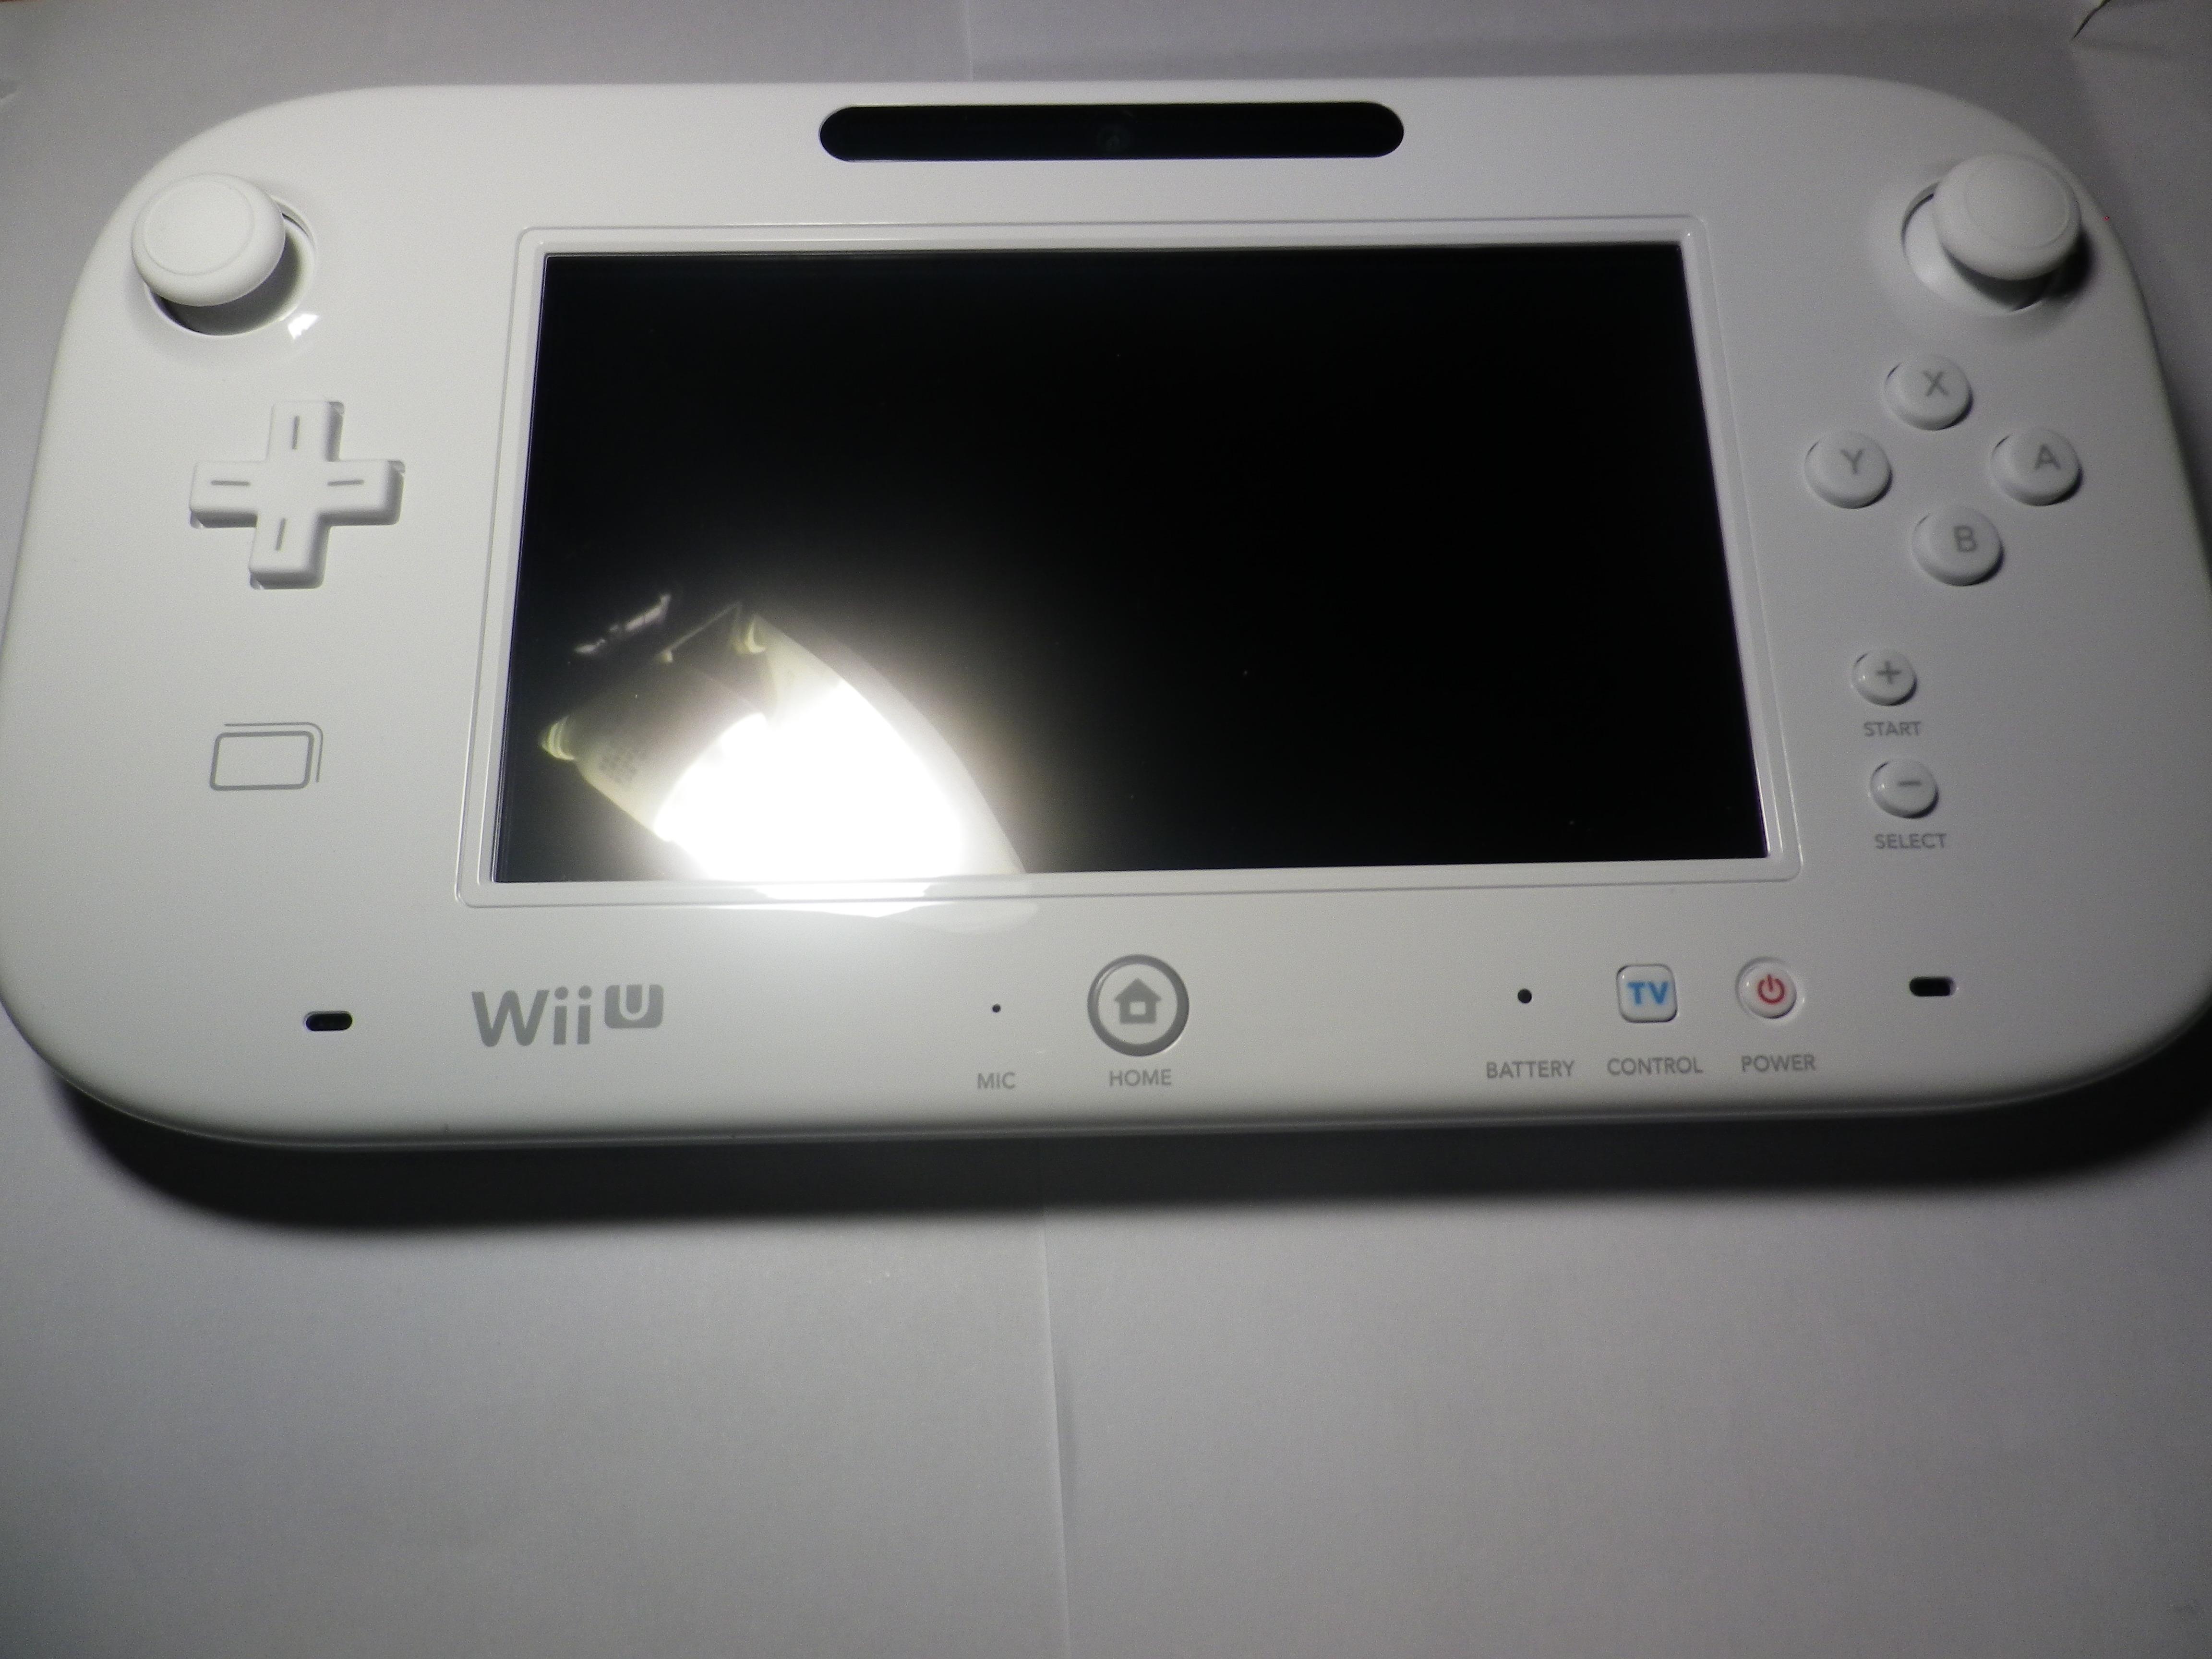 Wiiuゲームパッドとは Wii Uのレビュー ジグソー レビューメディア